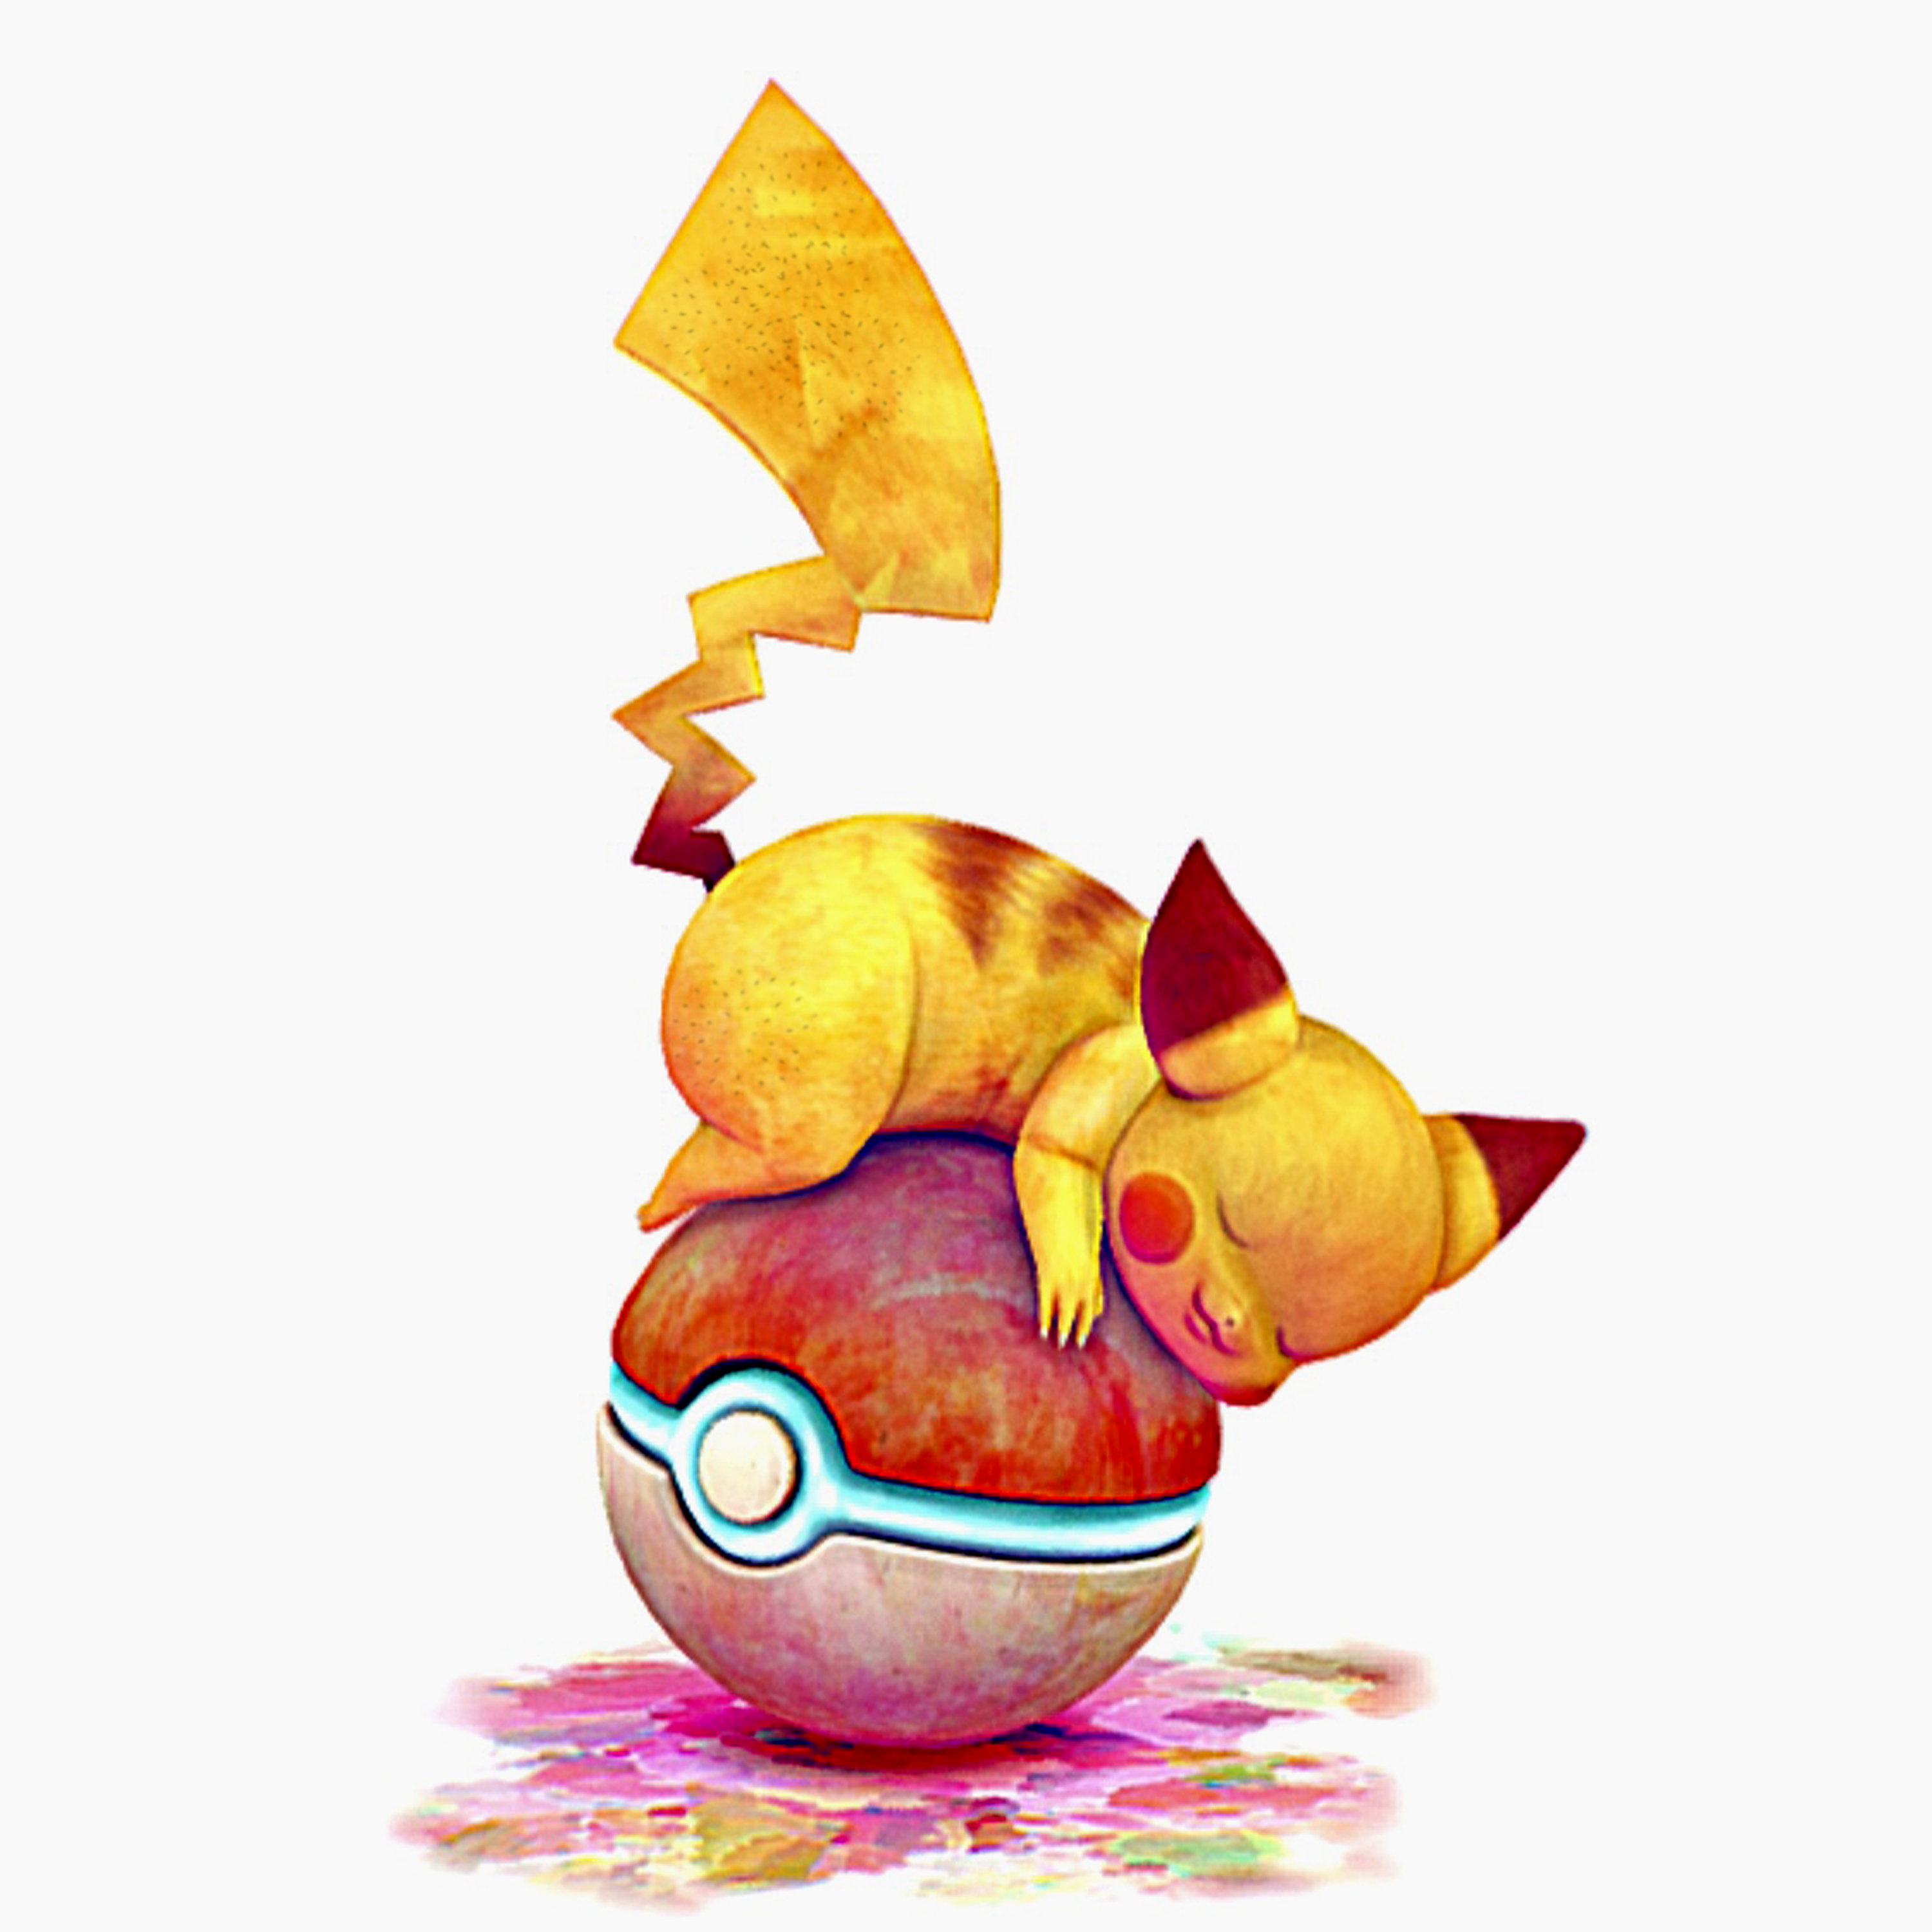 pikachu (pokemon) drawn by spicy_bardo